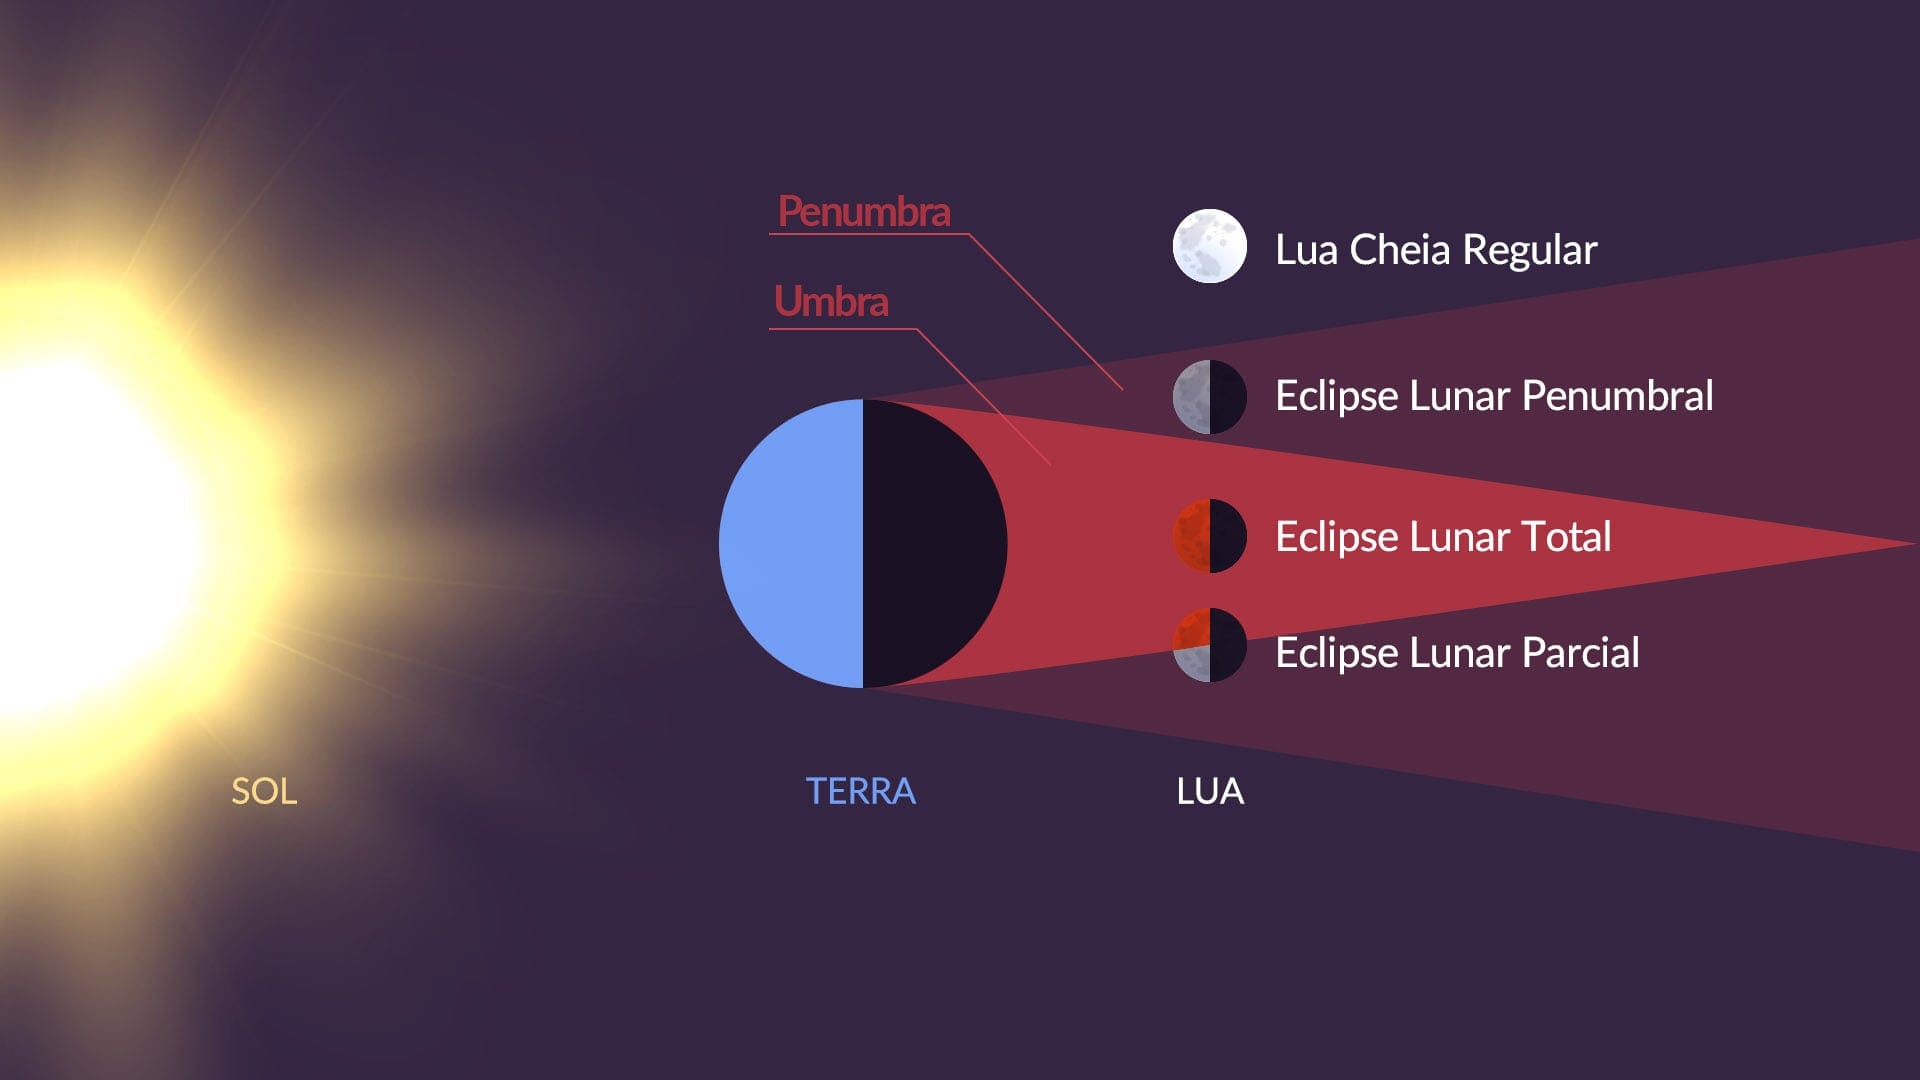 Lunar eclipse types